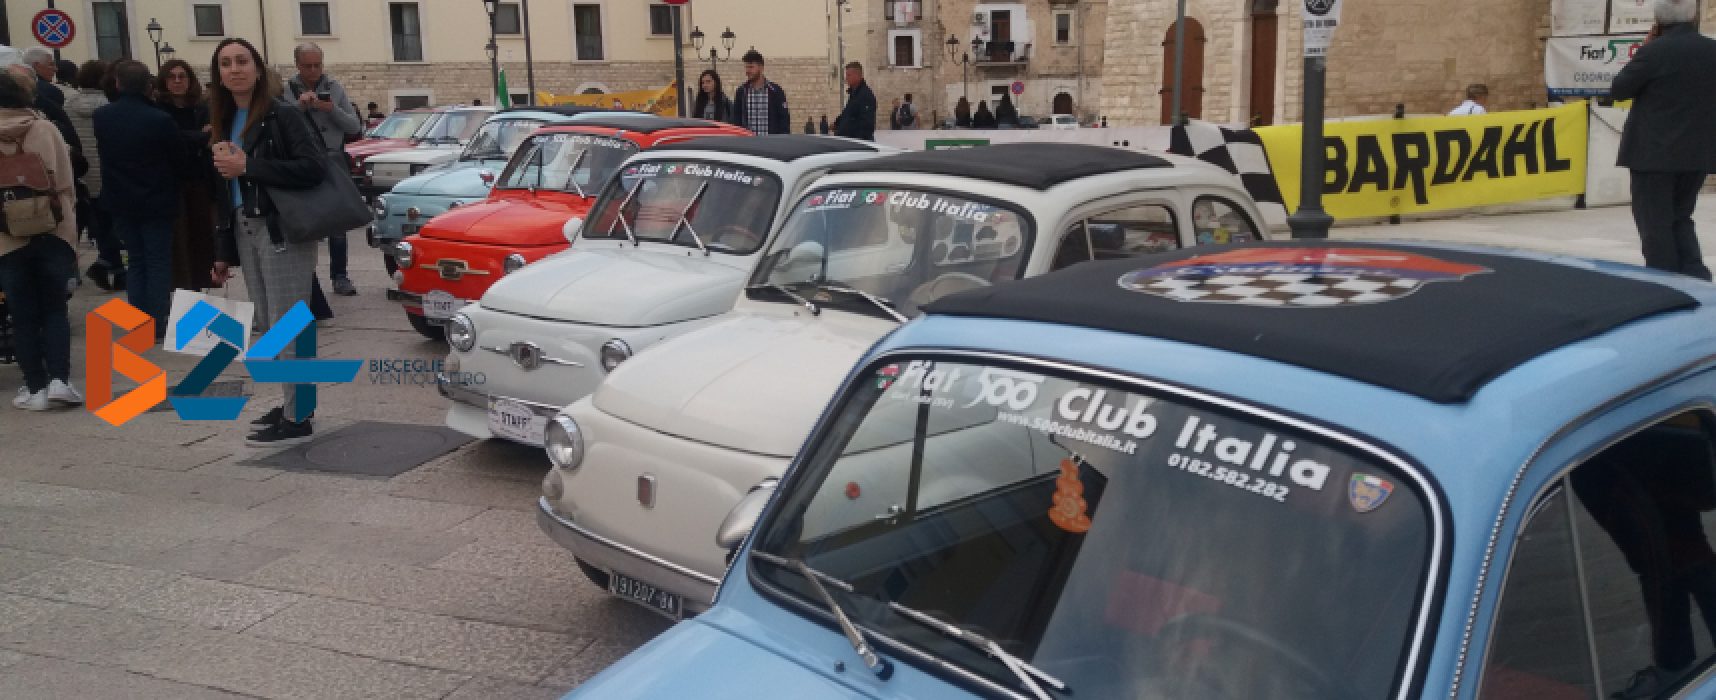 Raduno Fiat 500, un trionfo di colori, clacson e storia italiana / FOTO